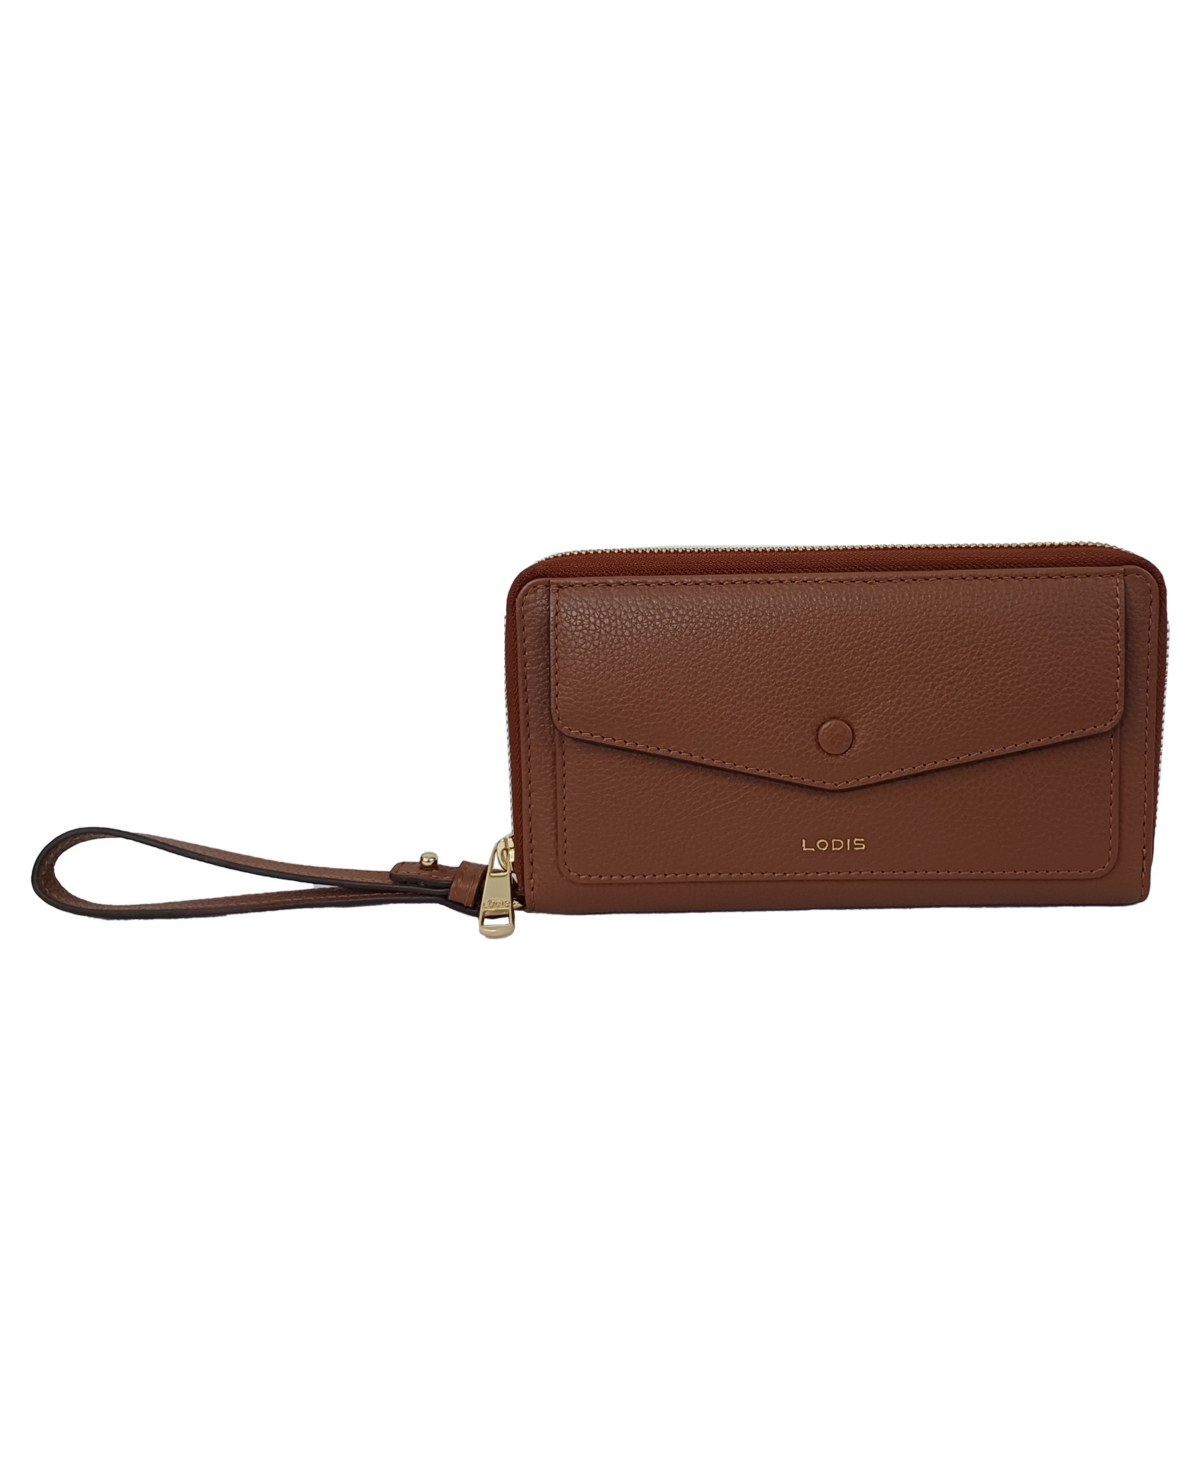 Stacey Zip Around Leather Wallet - Chestnut